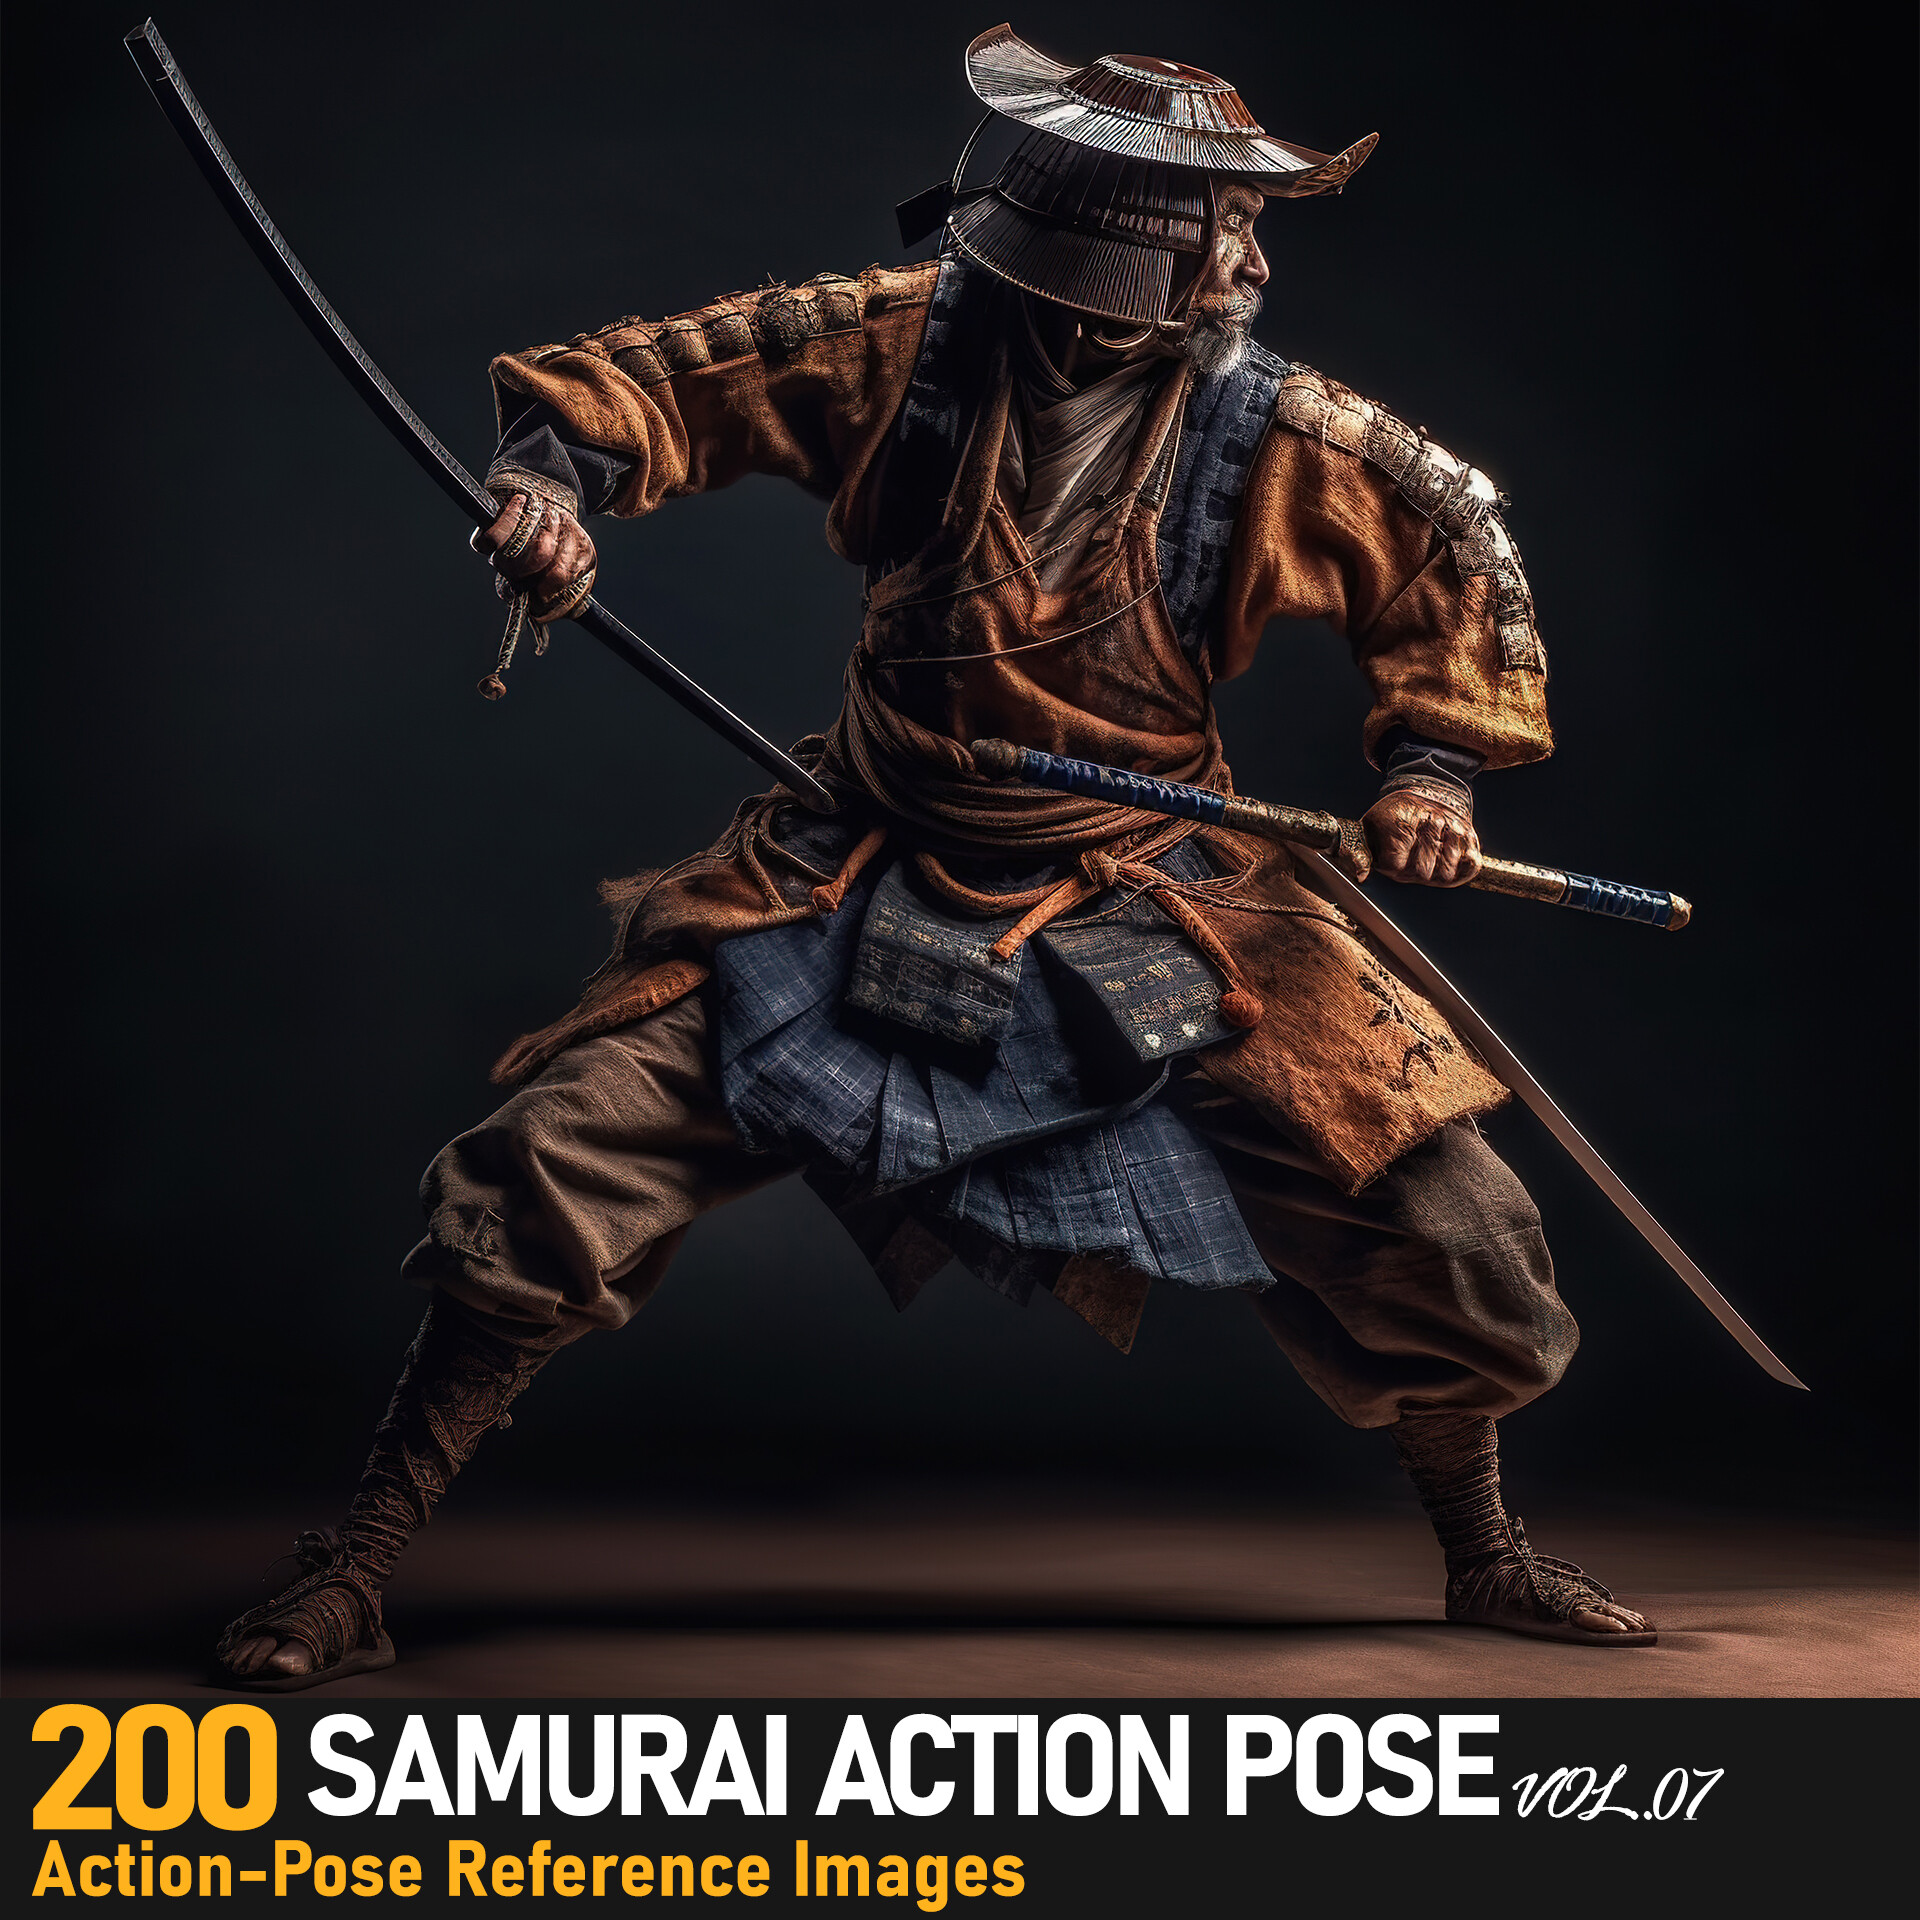 ArtStation - Samurai Action Pose VOL.07|4K Reference Images | Artworks